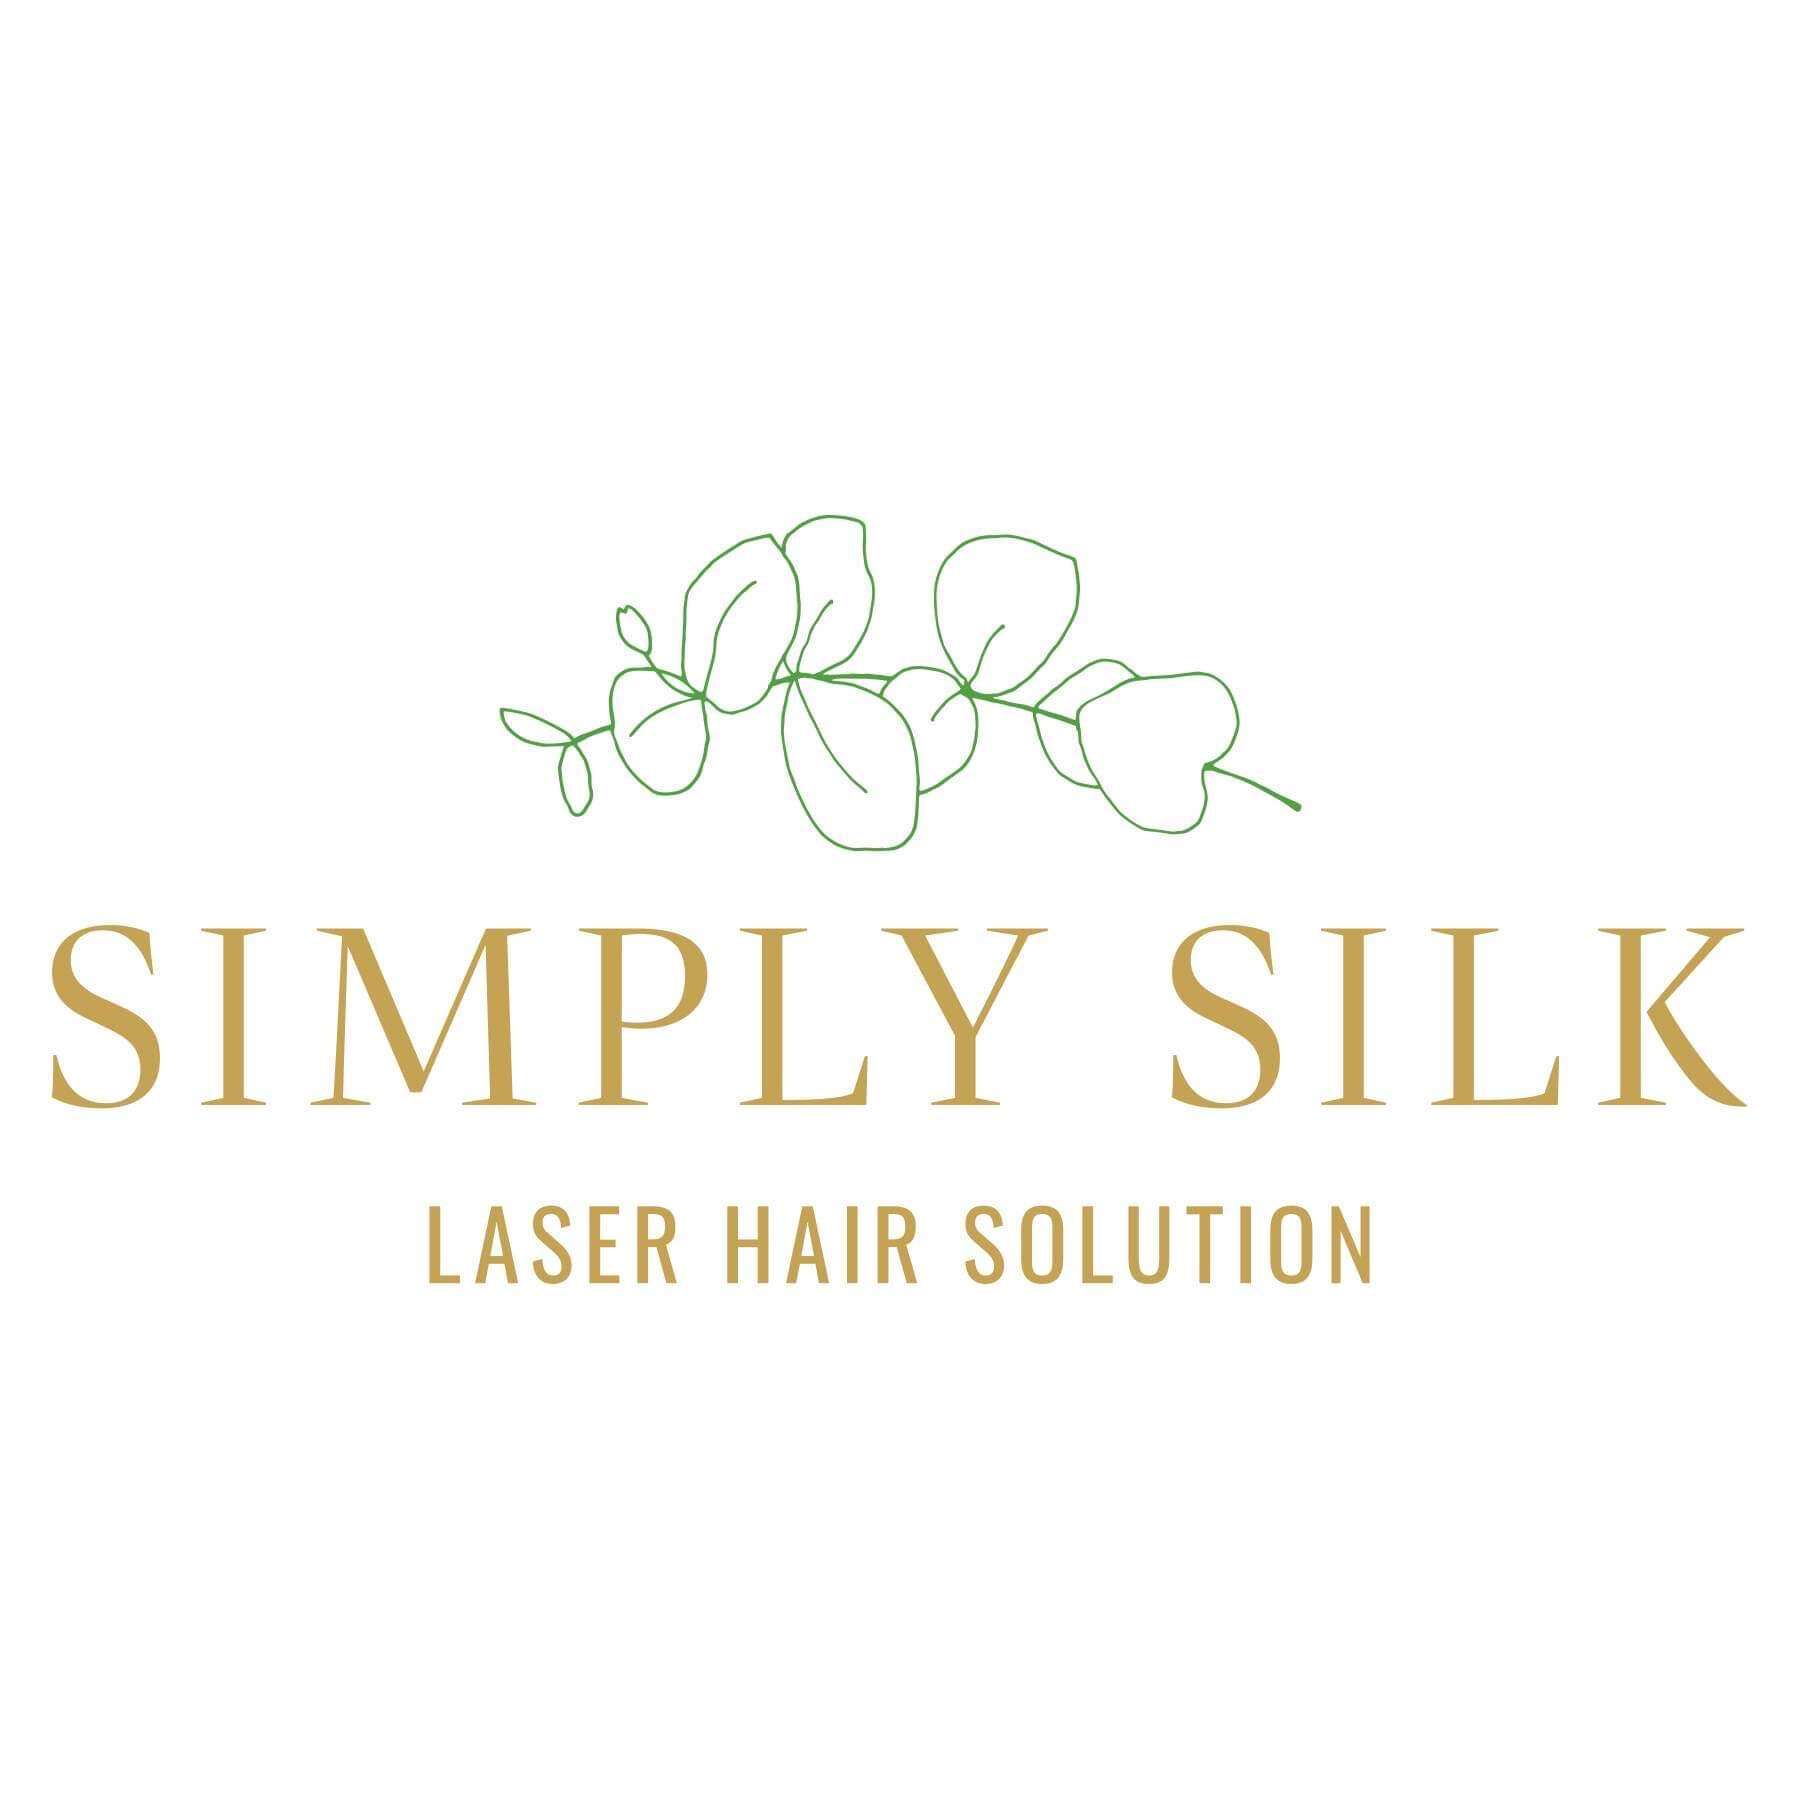 Simply Silk